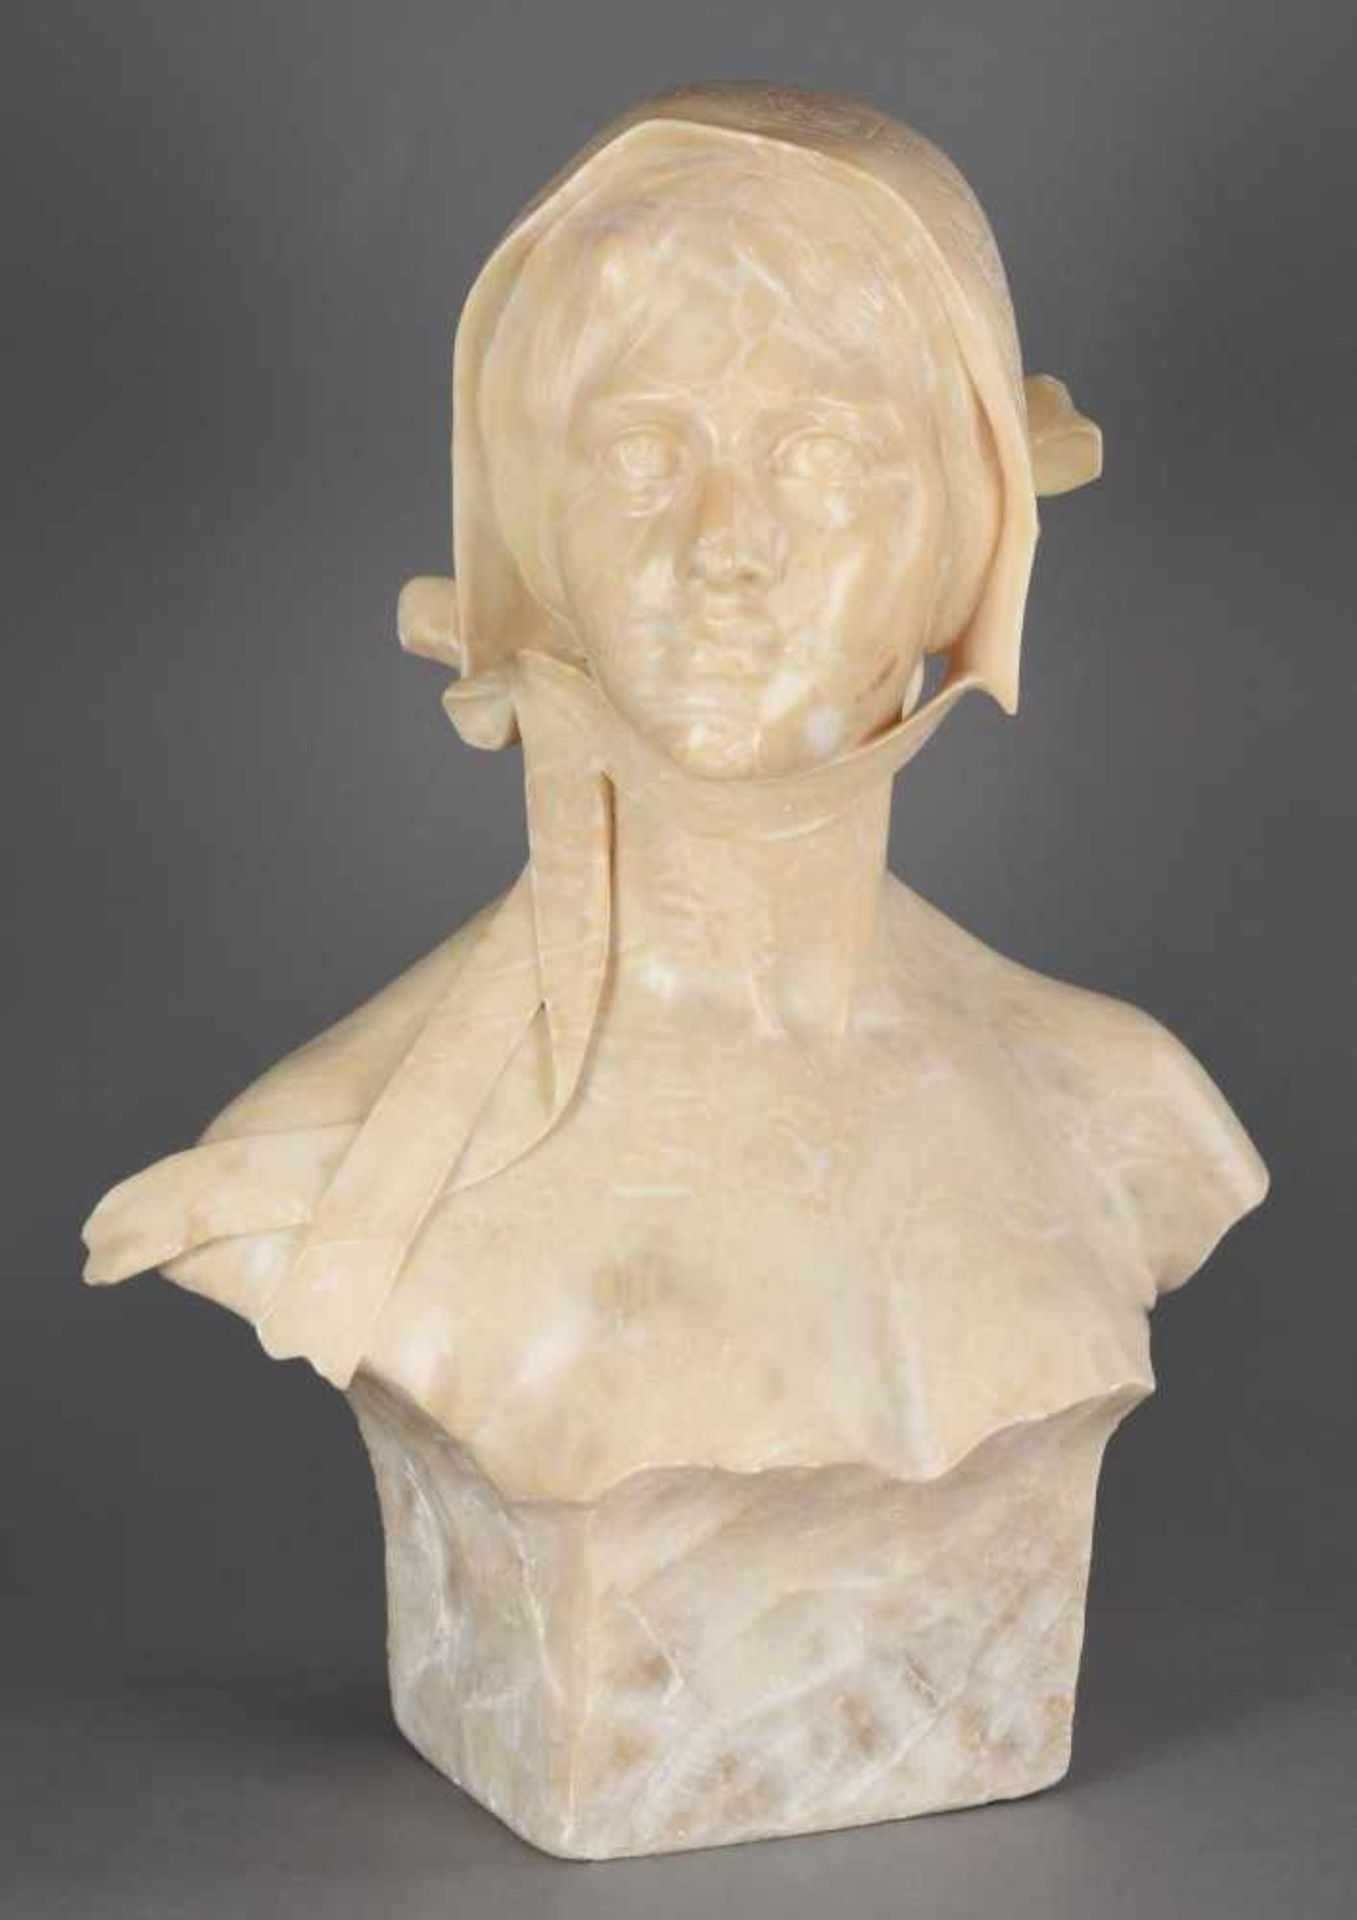 Fiaschi, P. Emilio (1858 Volterra - 1941 Florenz) Alabaster, Büste einer jungen Frau mit Haube, fein